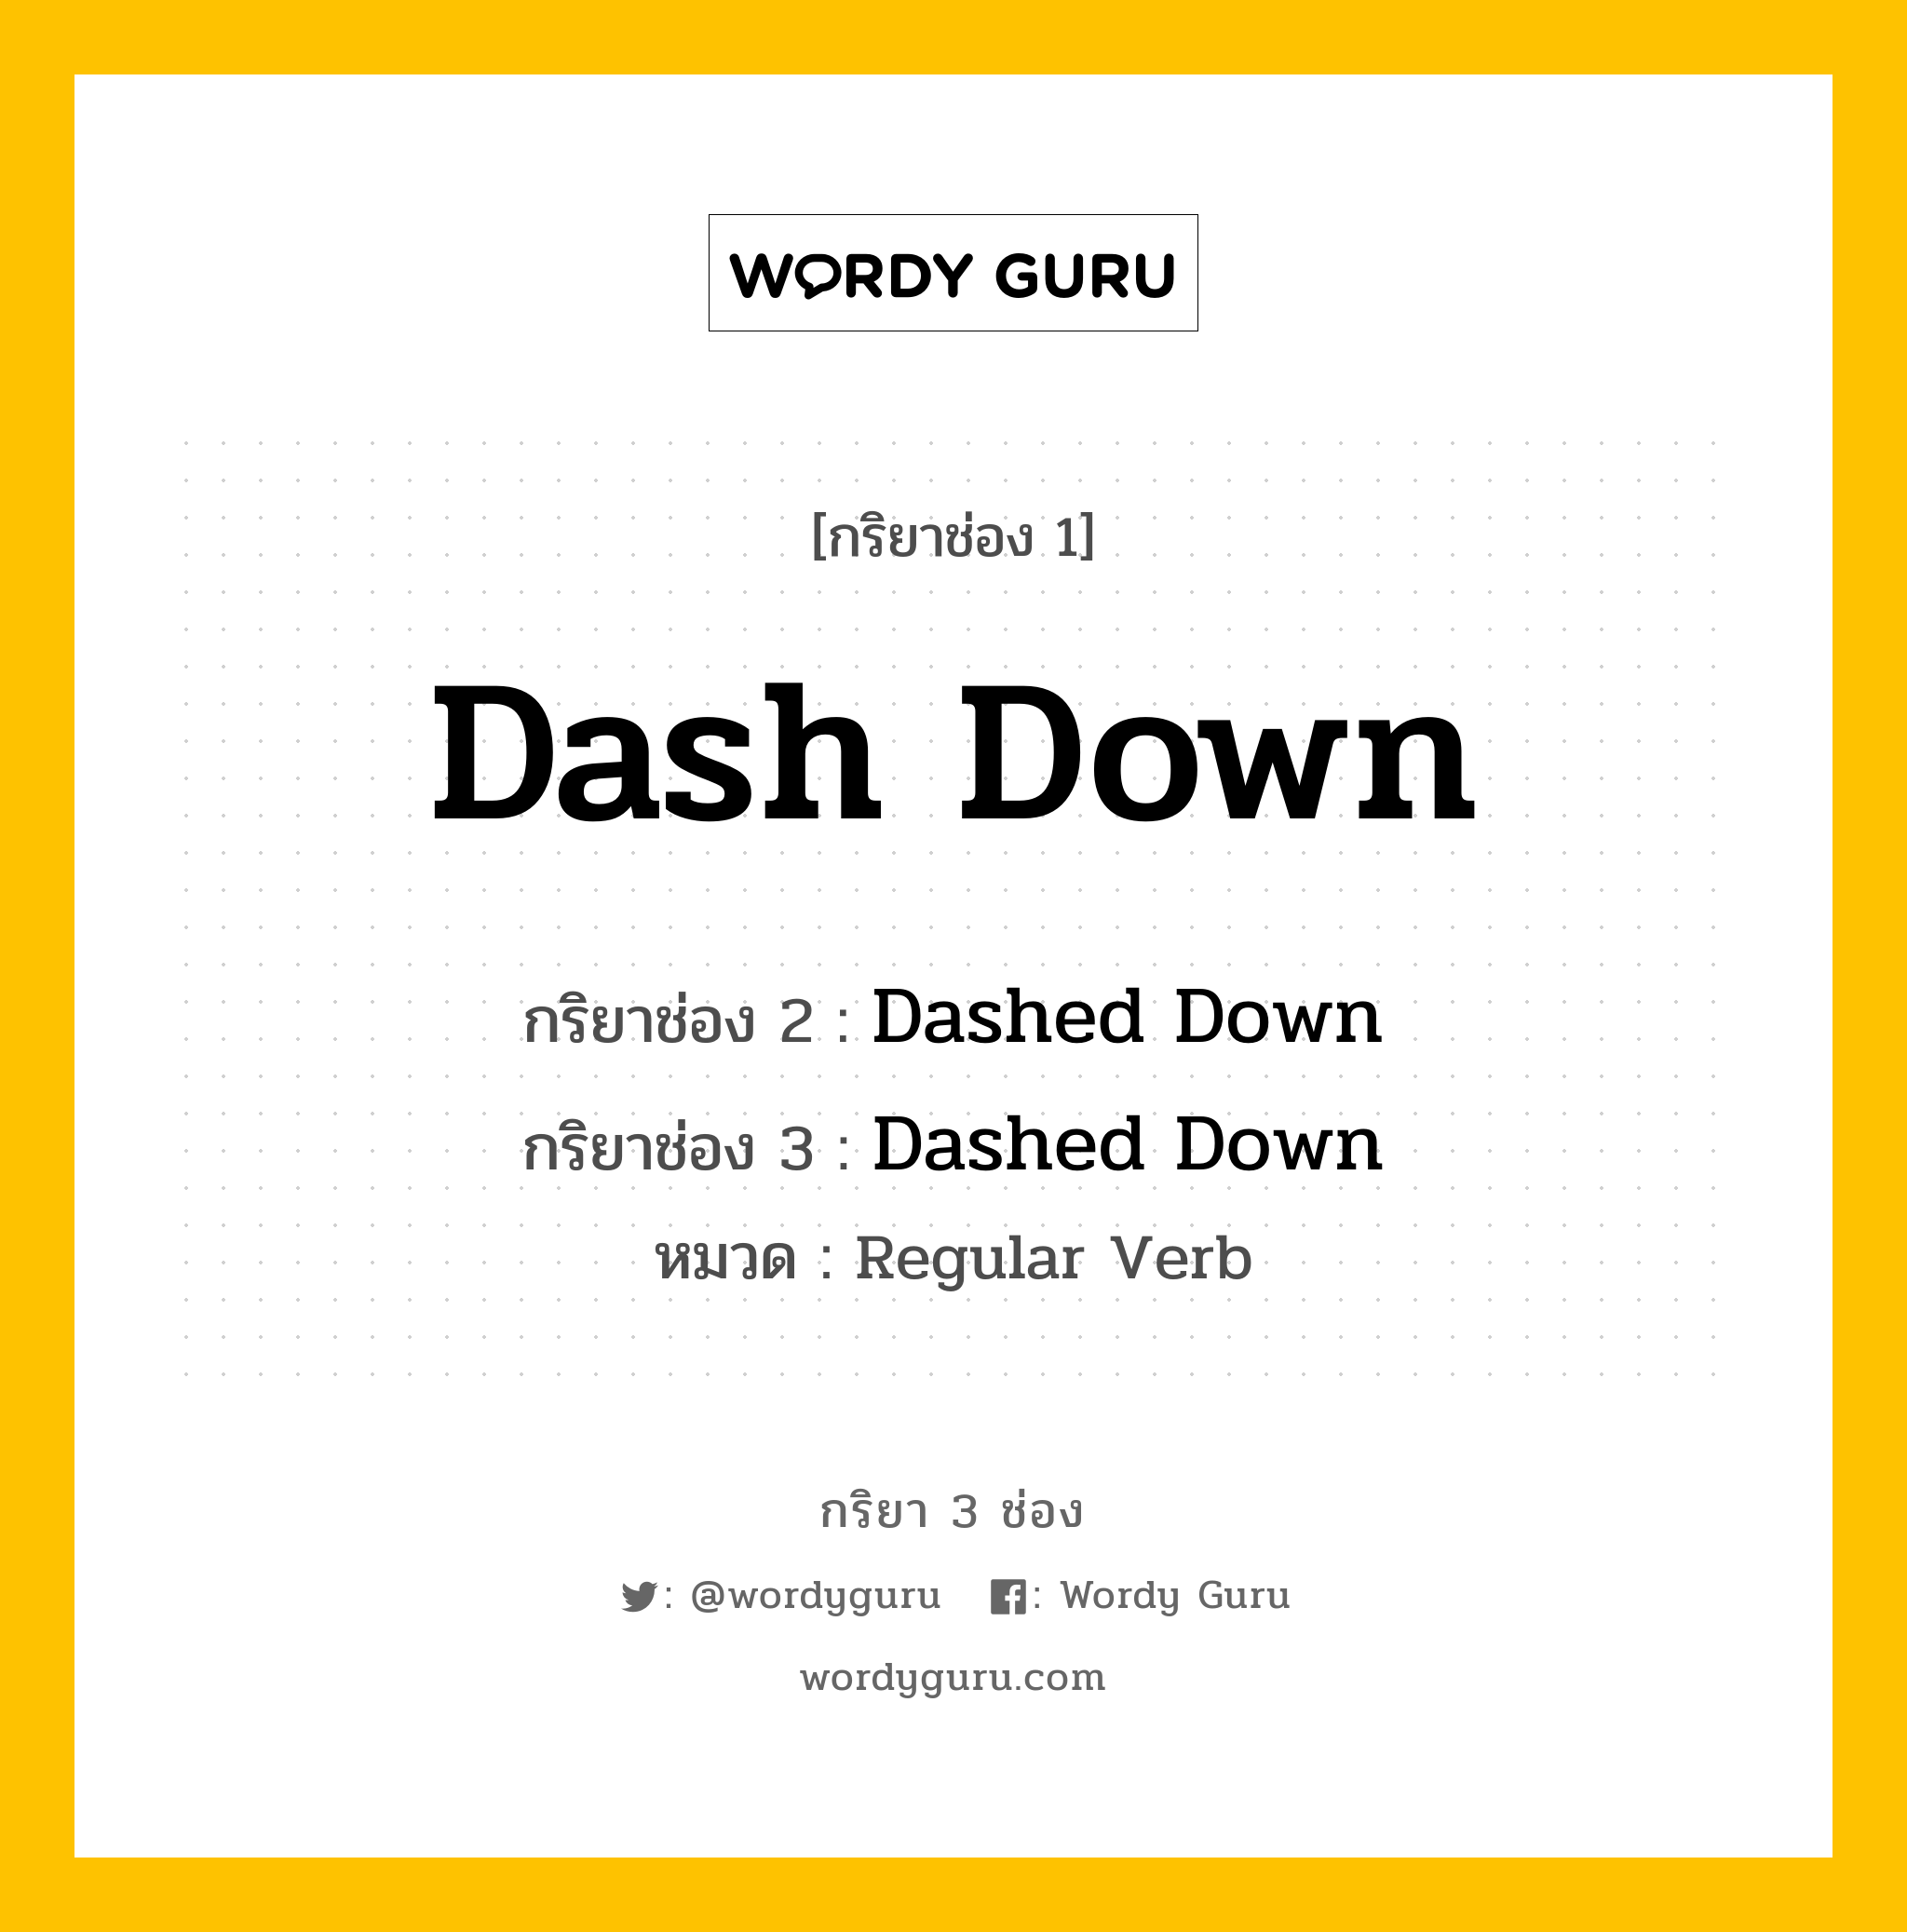 กริยา 3 ช่อง: Dash Down ช่อง 2 Dash Down ช่อง 3 คืออะไร, กริยาช่อง 1 Dash Down กริยาช่อง 2 Dashed Down กริยาช่อง 3 Dashed Down หมวด Regular Verb หมวด Regular Verb